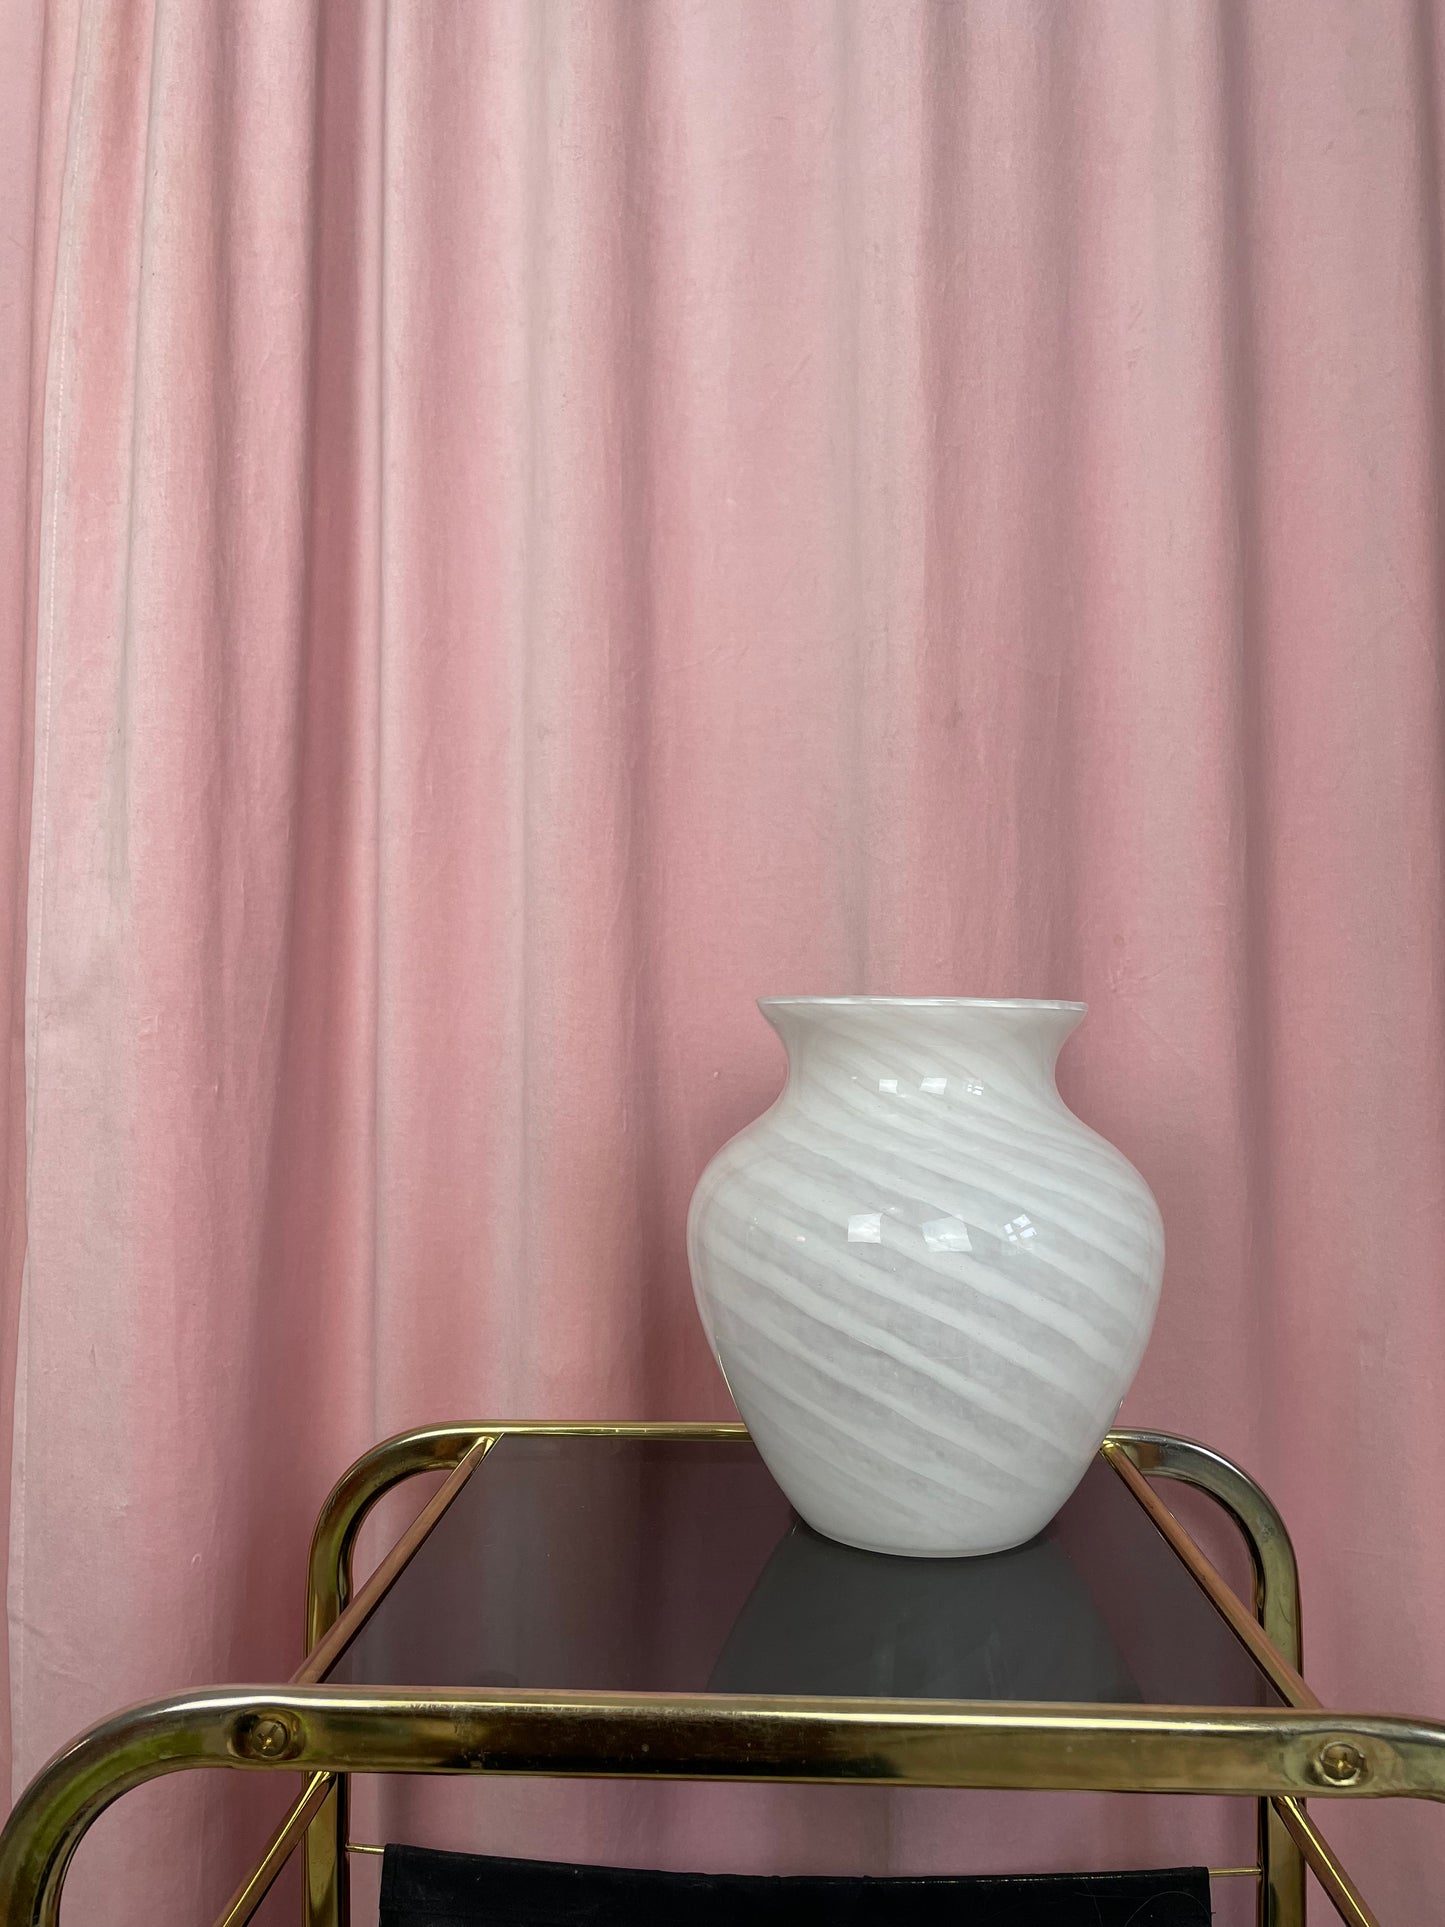 Murano glass vase with milky white swirl